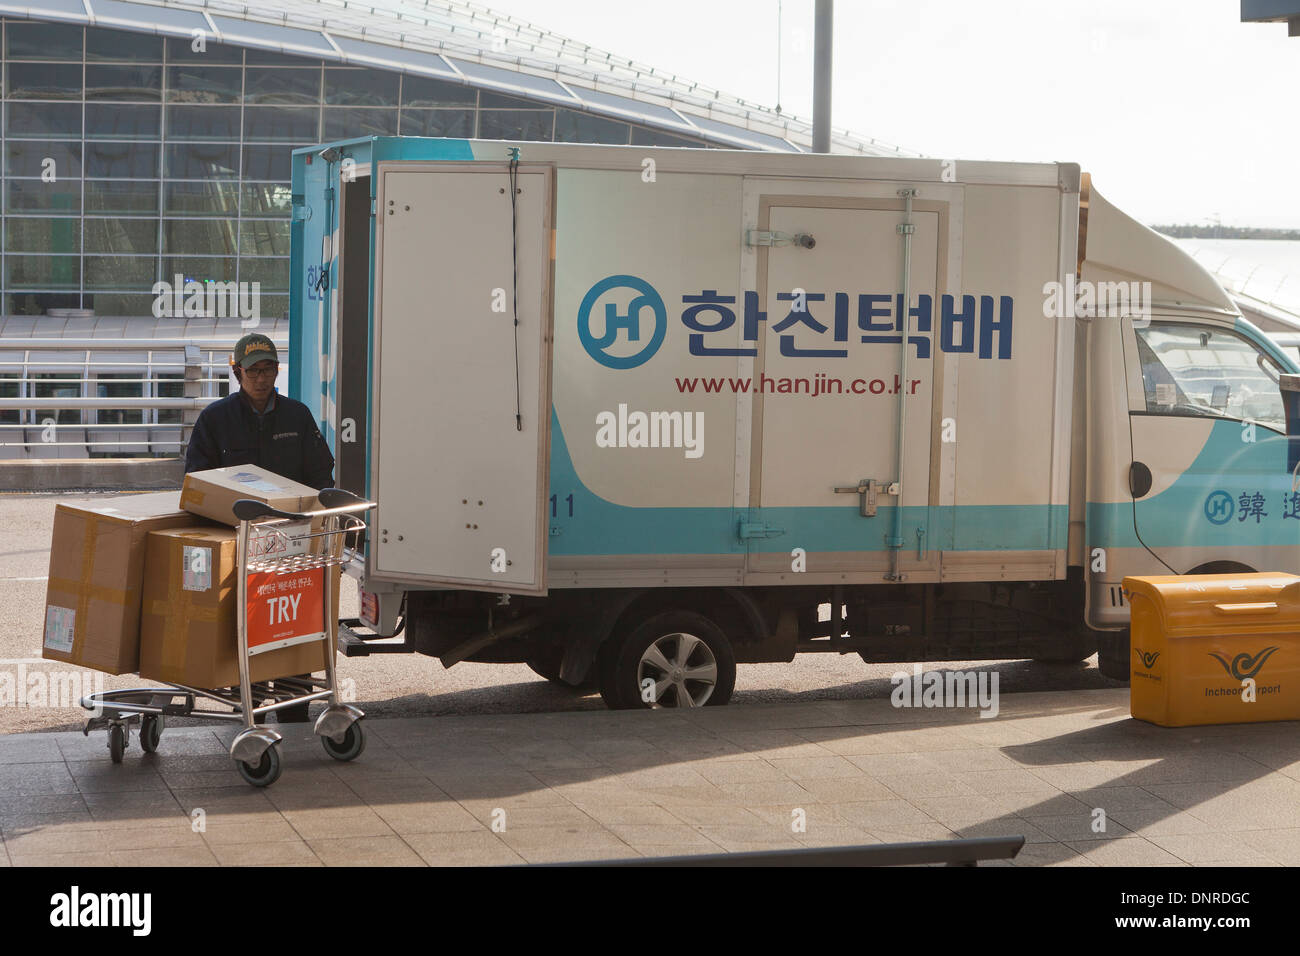 Service de livraison de colis Hanjin chariot - Incheon, Corée du Sud Banque D'Images